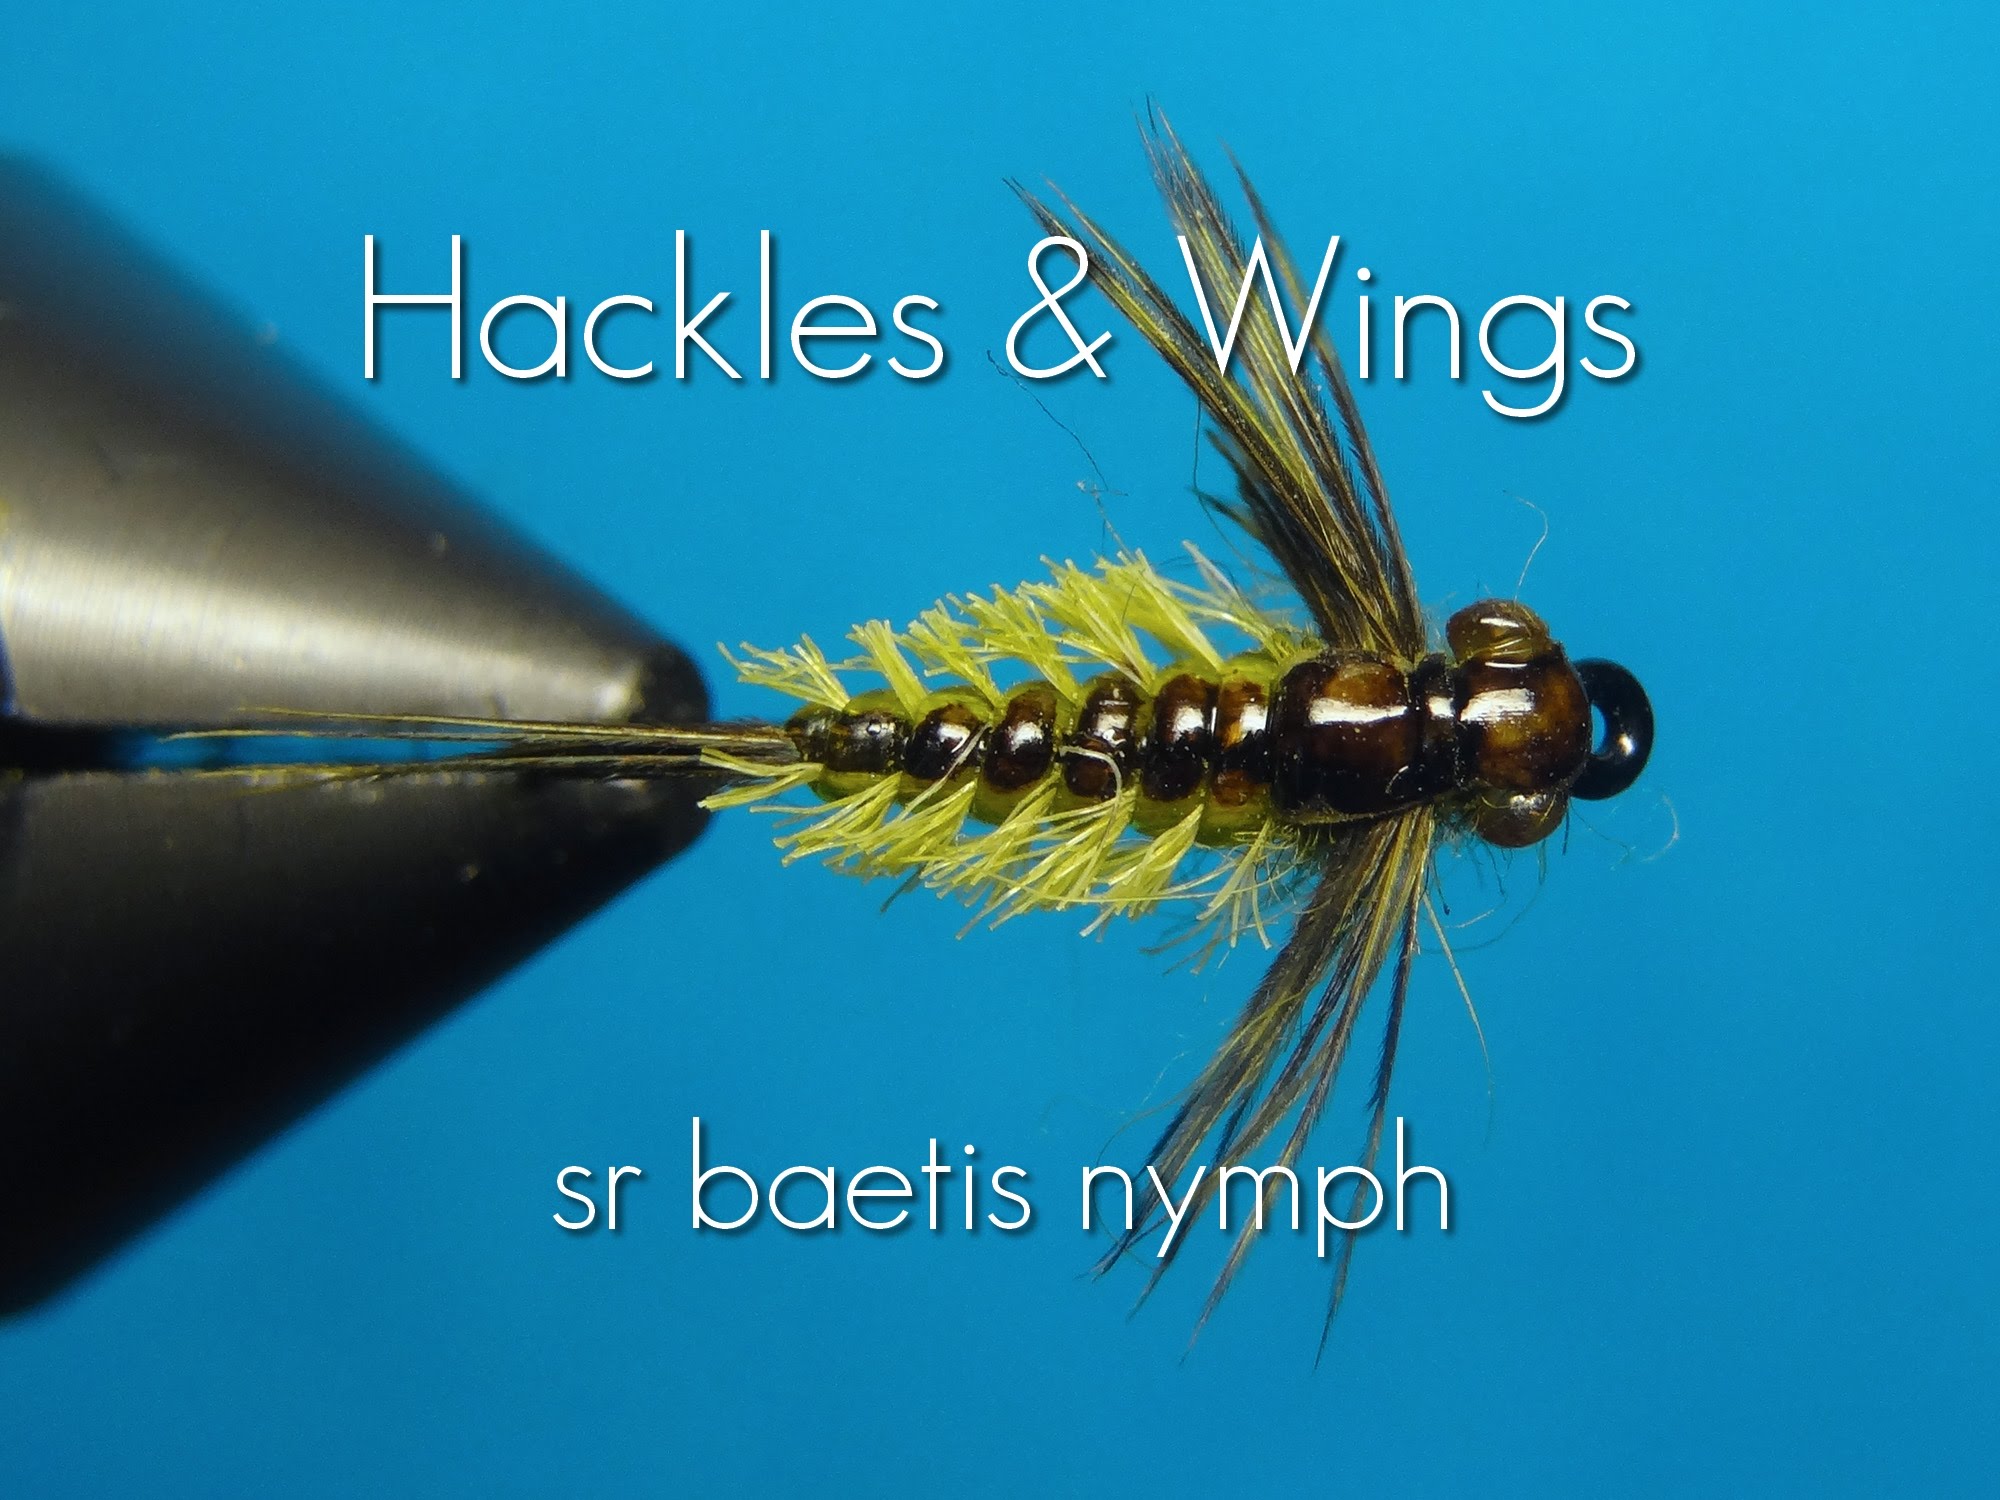 Fly Tying Baetis Nymph (SR) | Hackles & Wings - YouTube